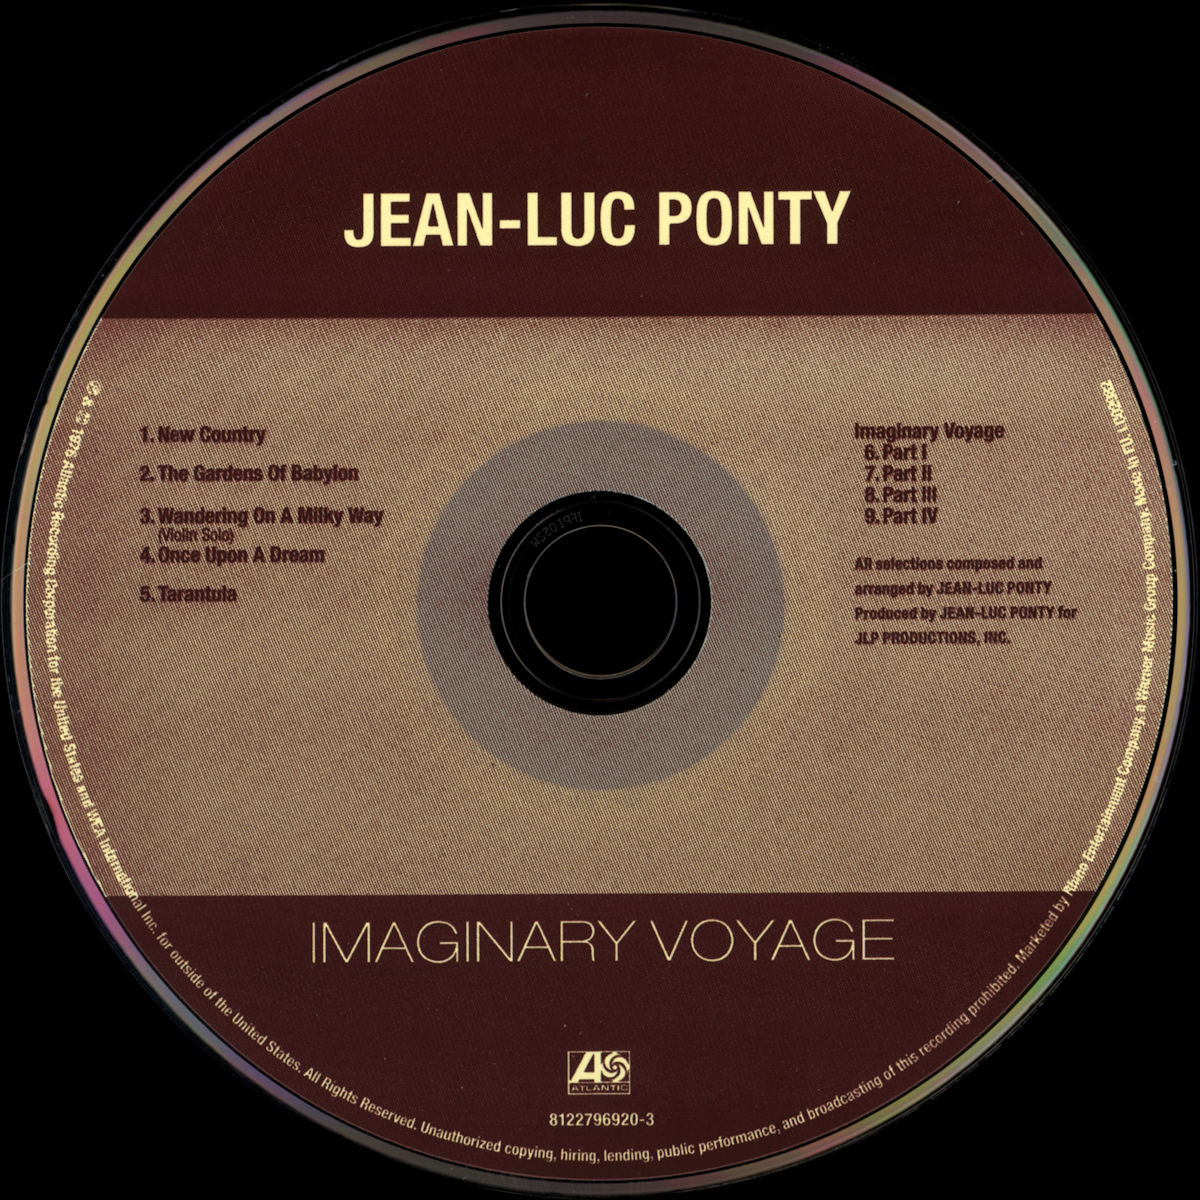 Imaginary voyage - Wikipedia